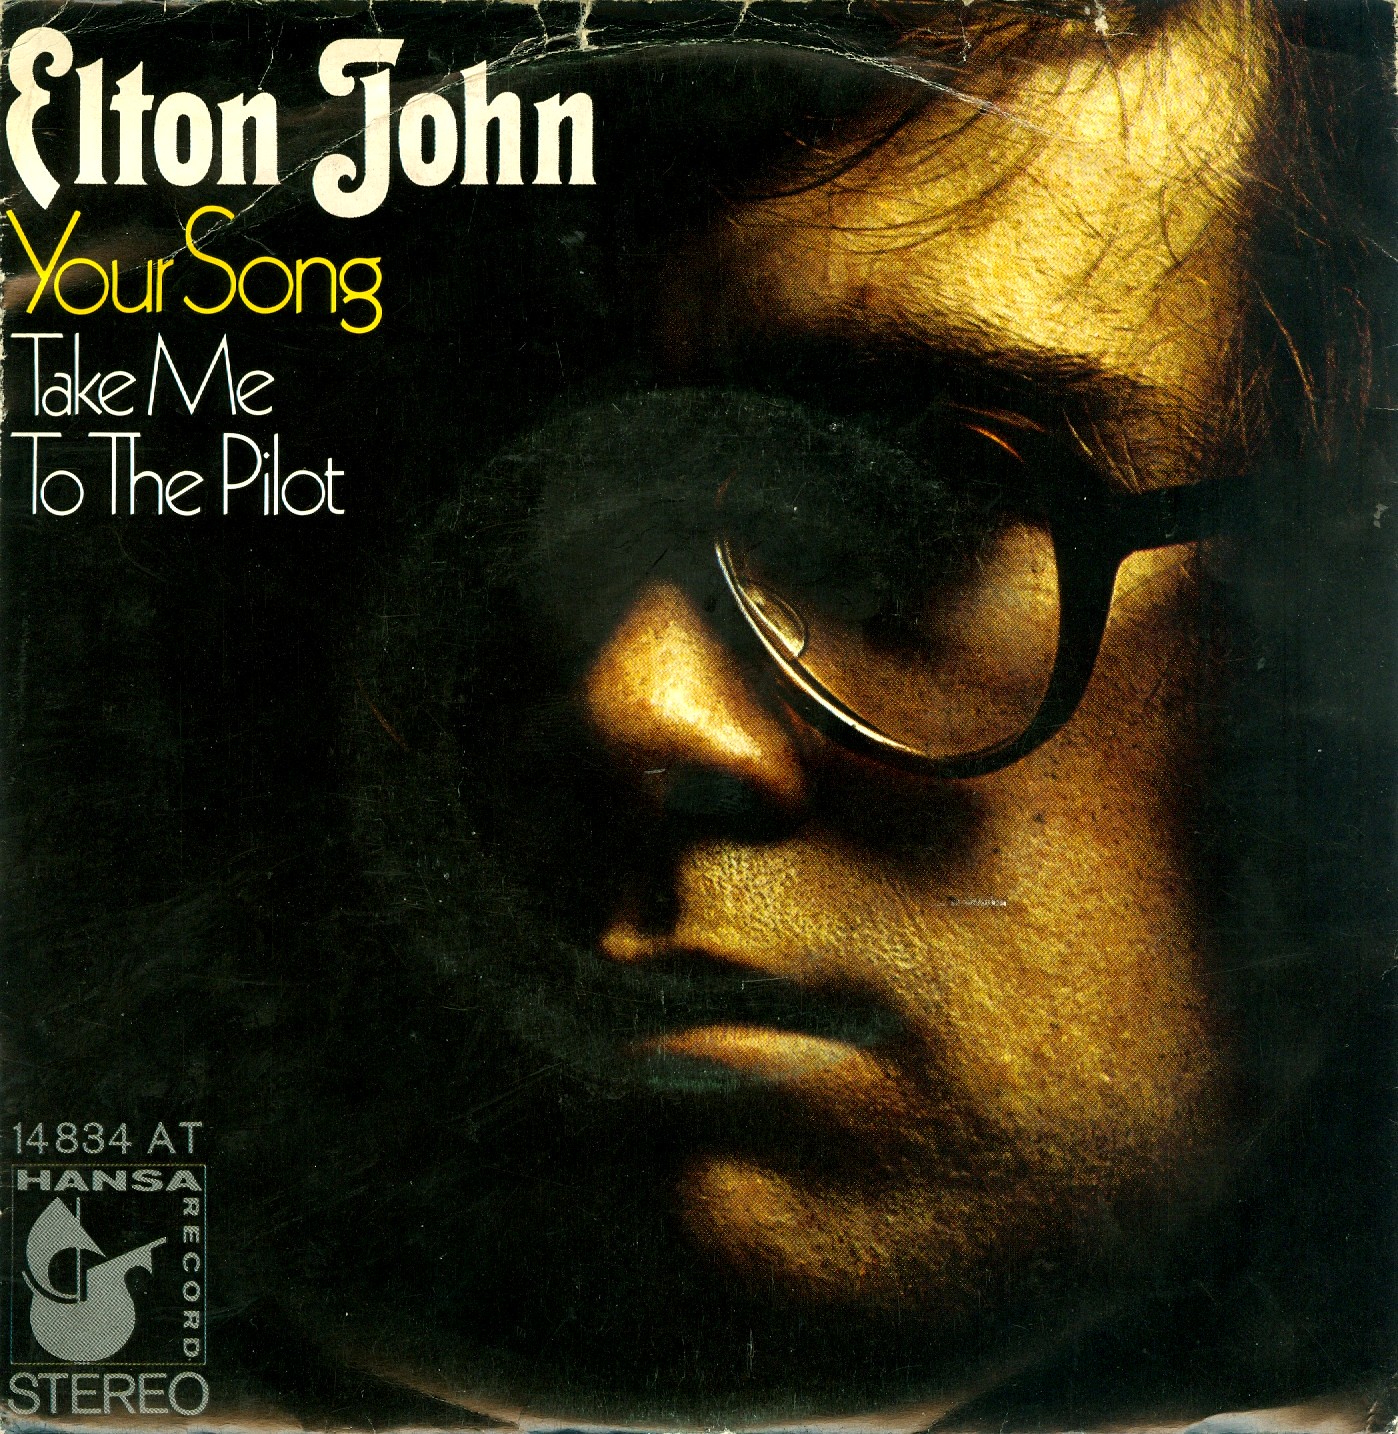 elton john album cover art